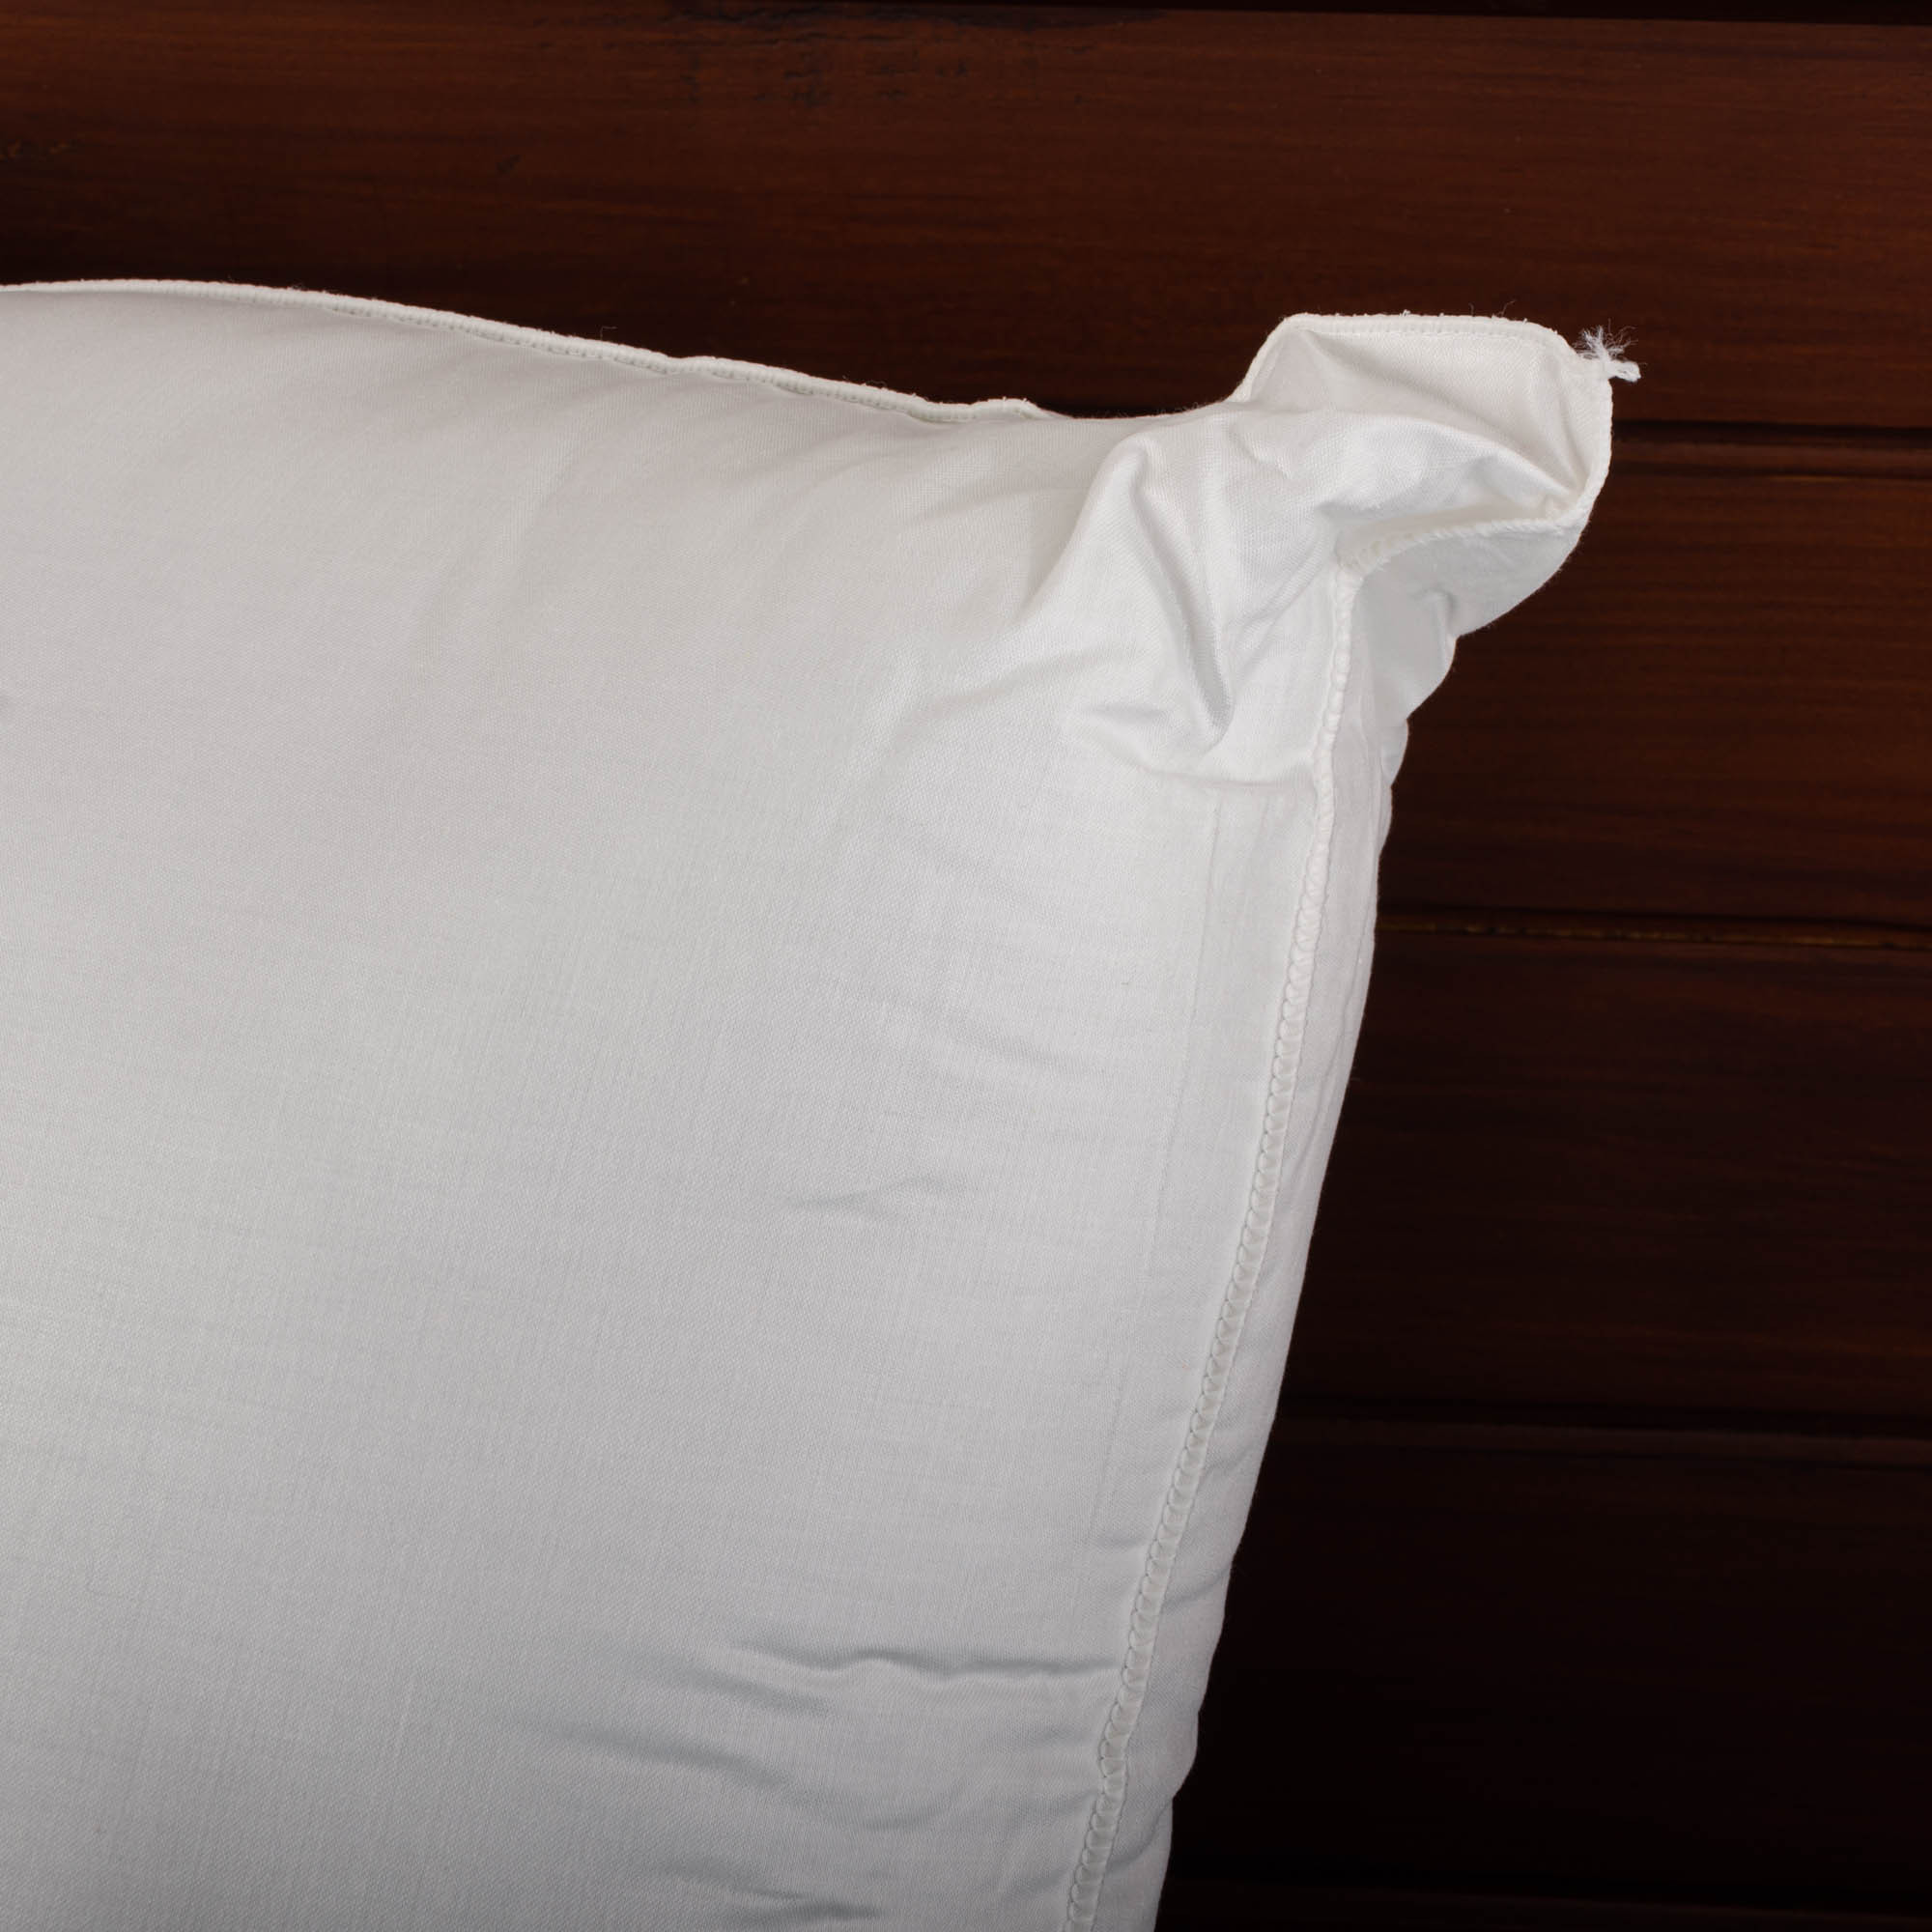 Funda de almohada para cuerpo 100% de algodón con poliéster suave y relleno